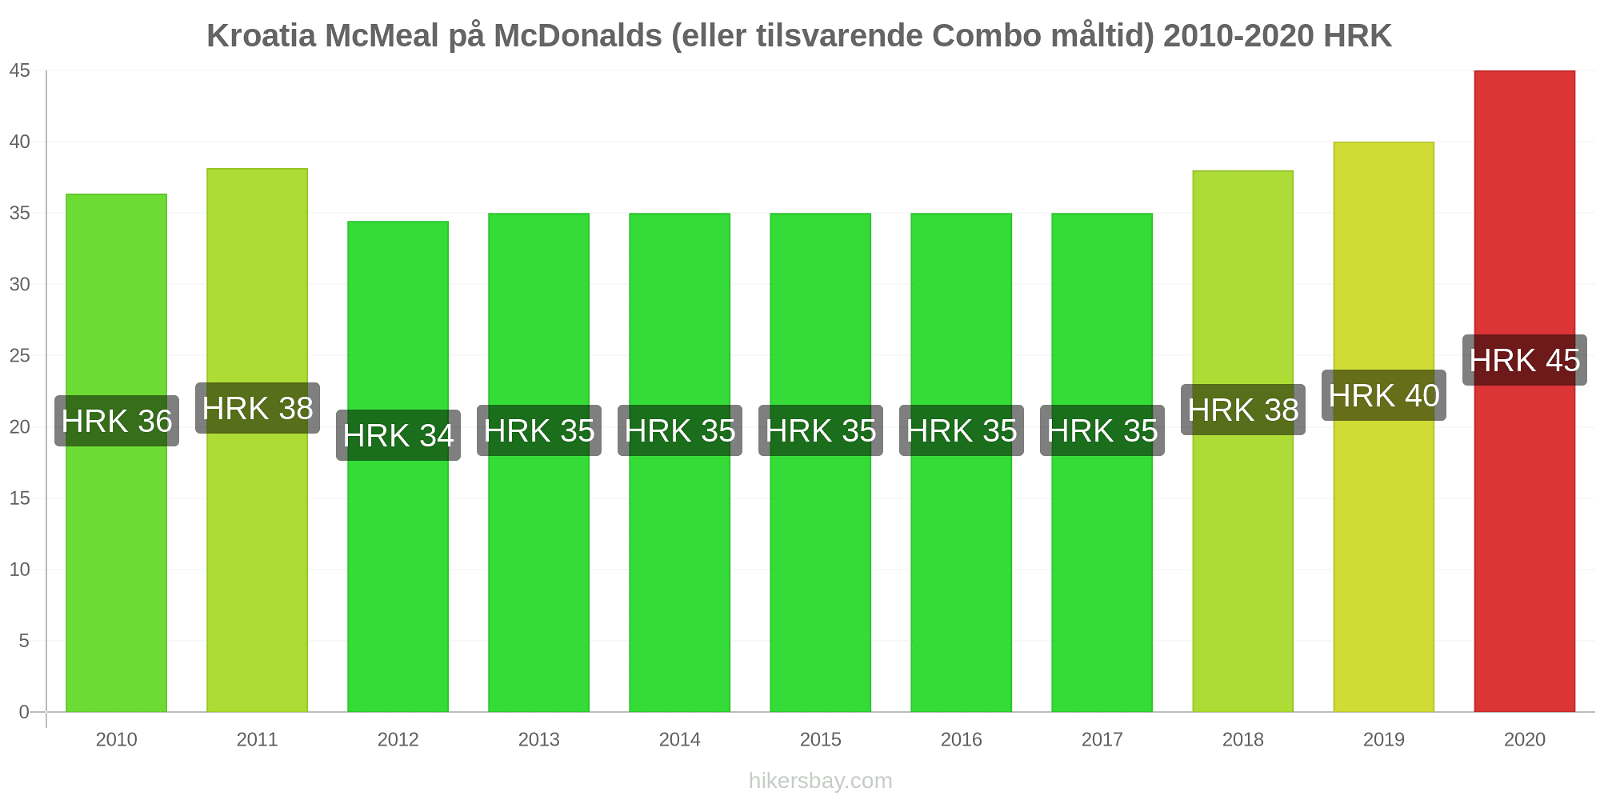 Kroatia prisendringer McMeal på McDonalds (eller tilsvarende Combo måltid) hikersbay.com